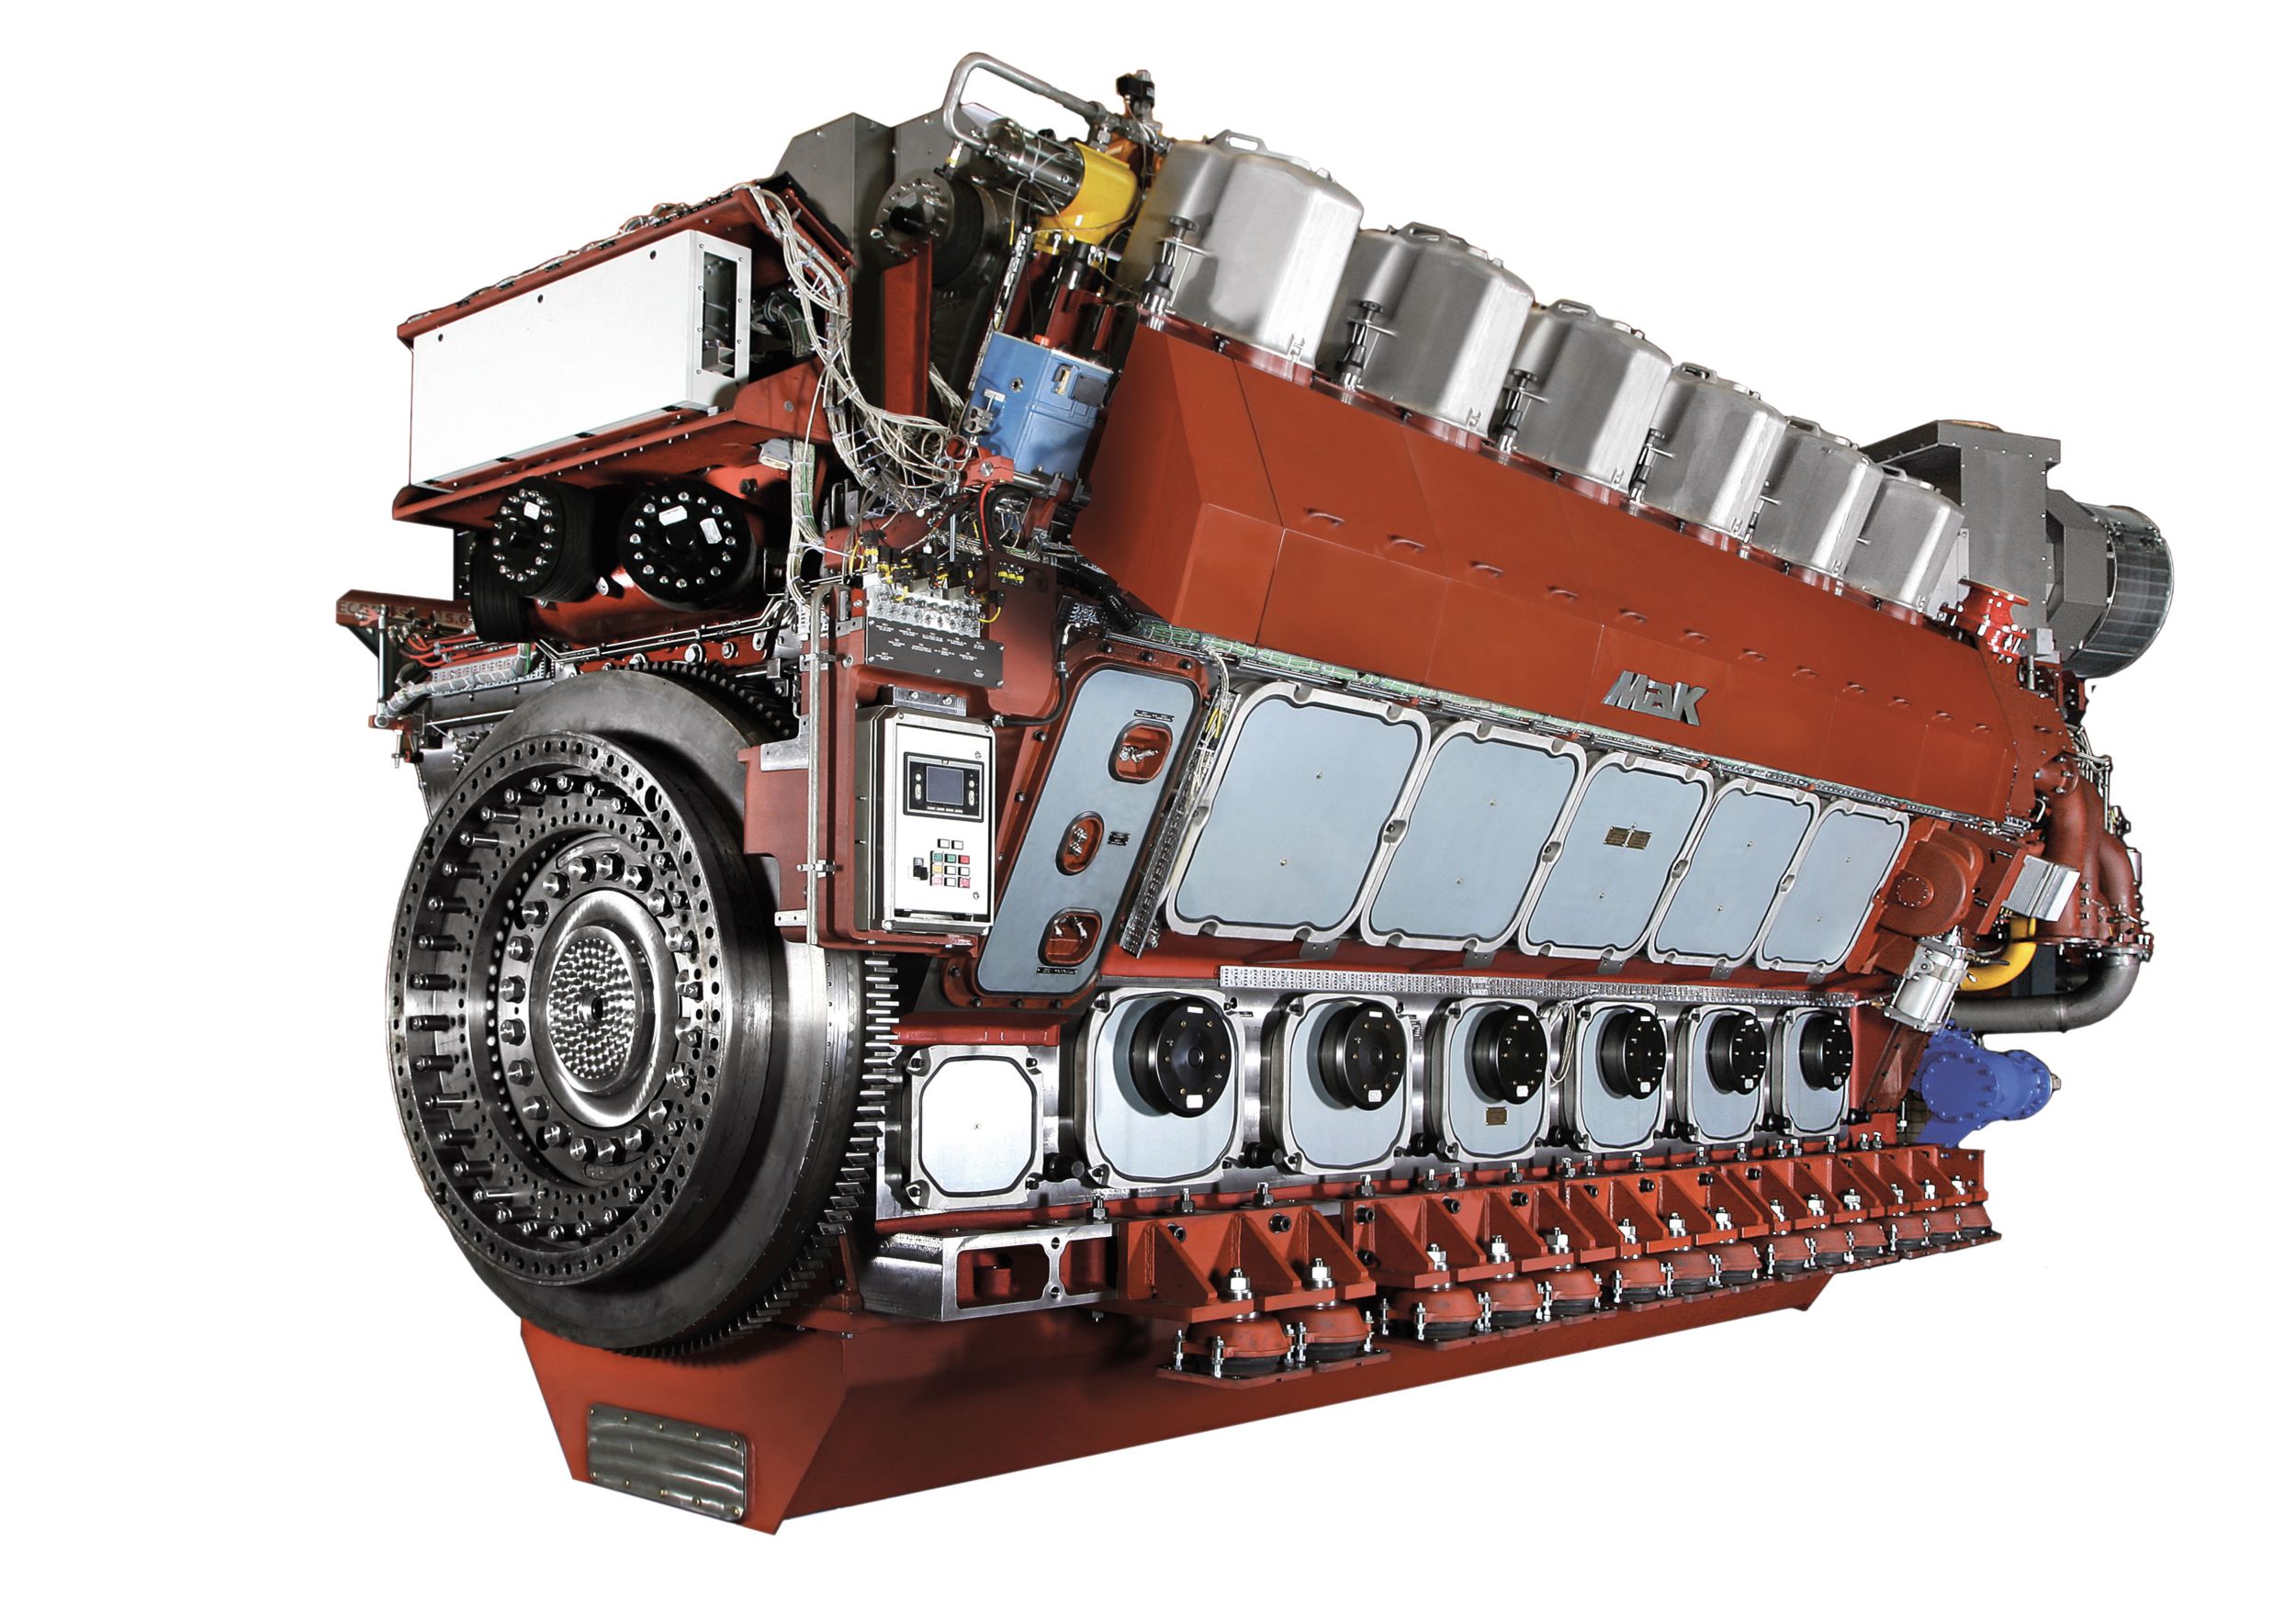 Motor de Propulsión VM 46 DF